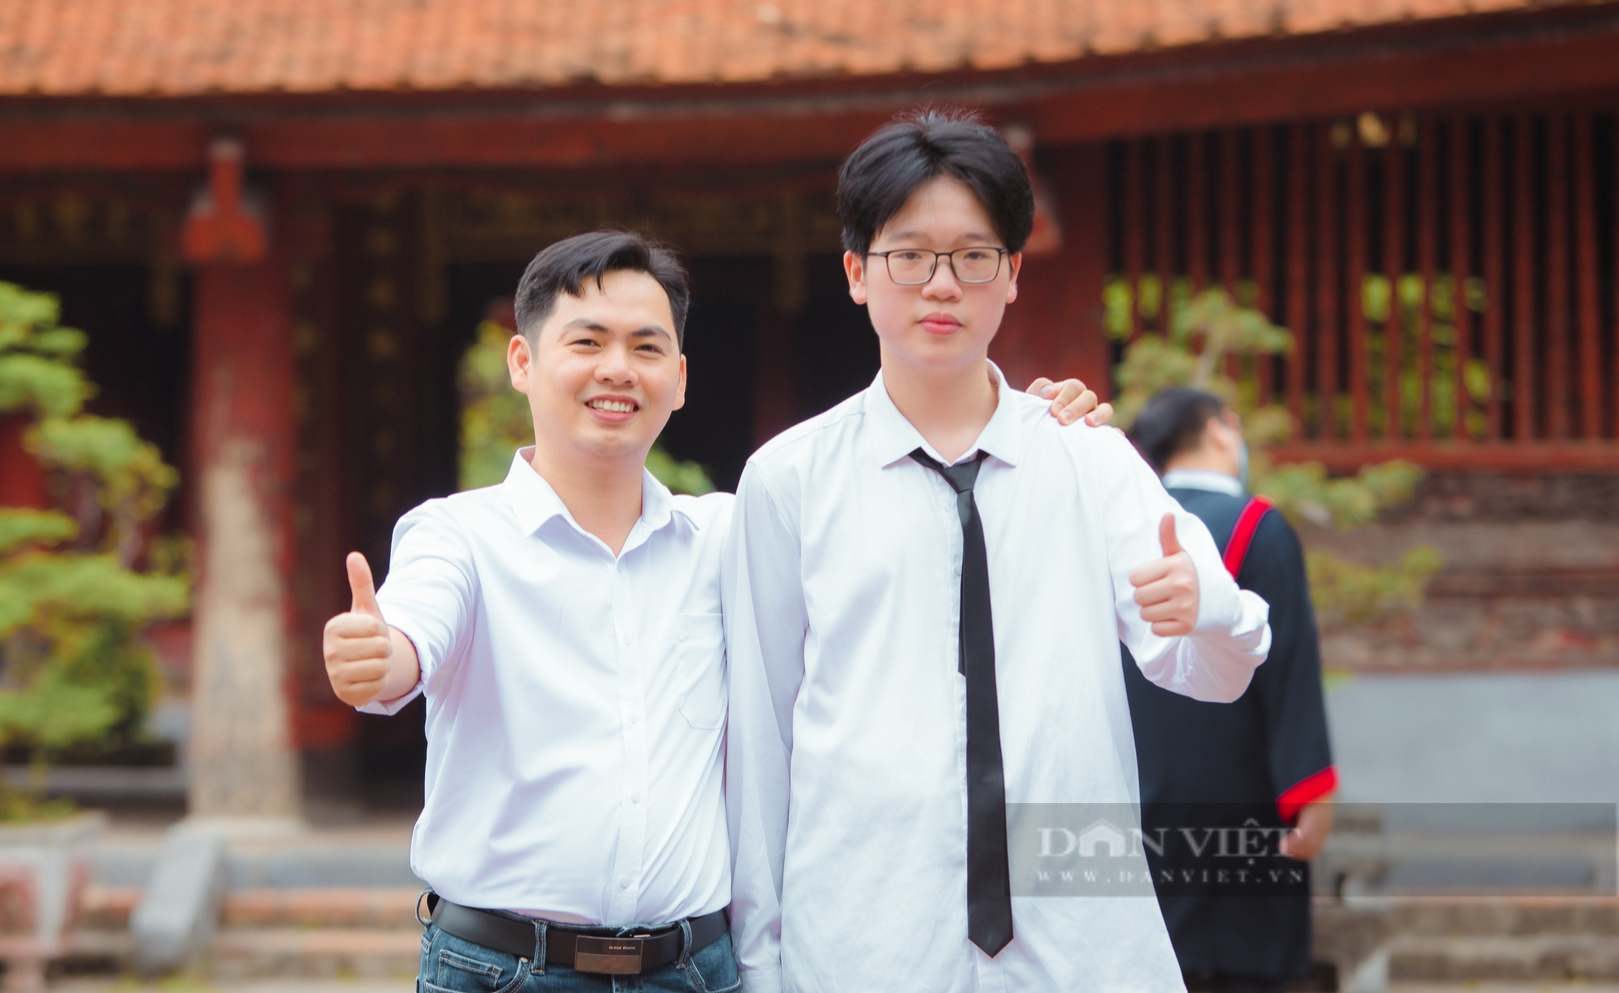 Cả lớp đỗ trường Chuyên ở Hà Nội với nhiều thủ khoa, á khoa: Bí quyết từ người thầy - Ảnh 2.